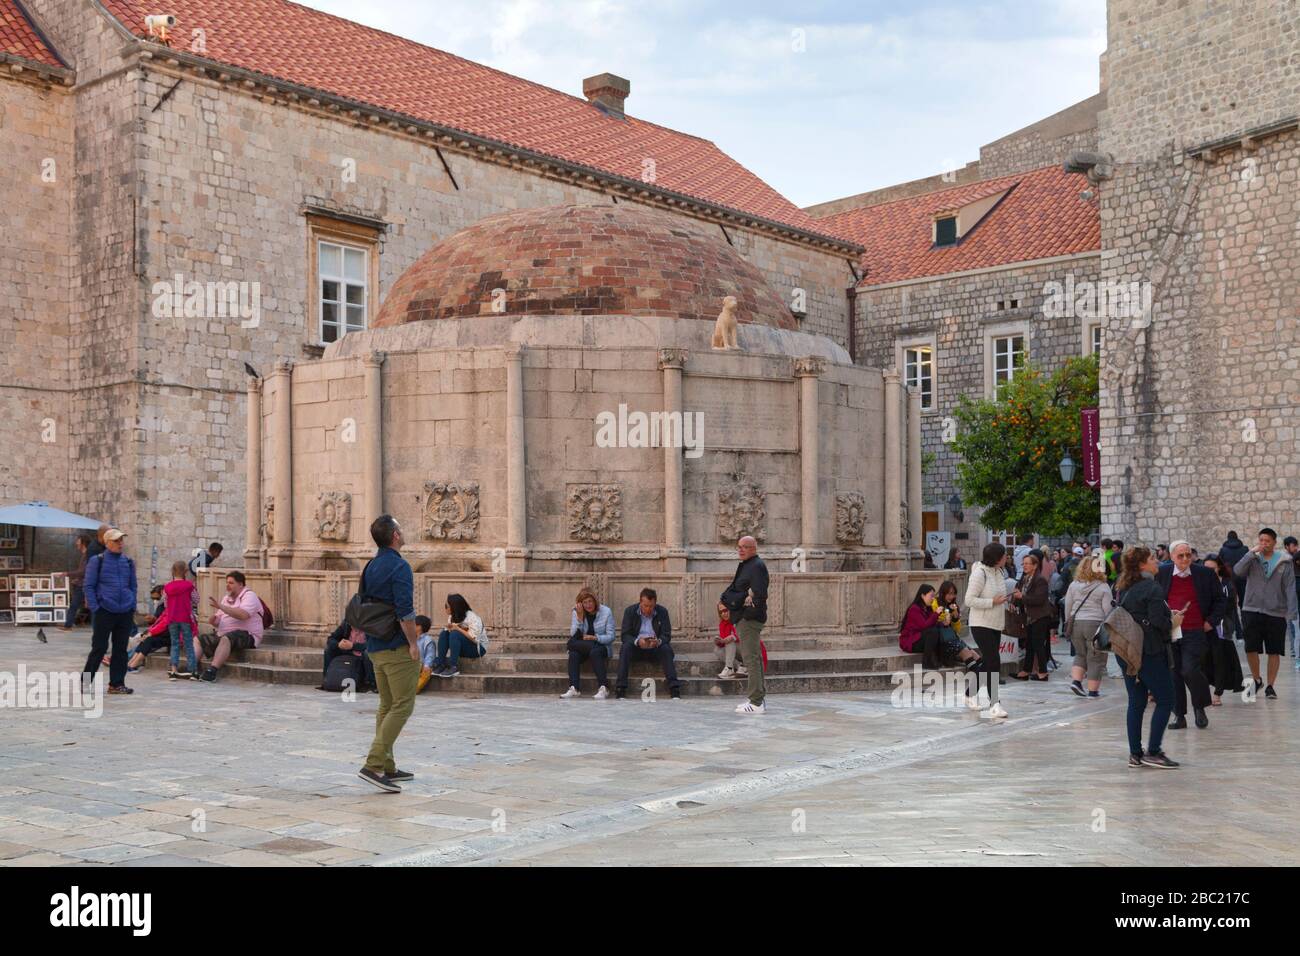 Dubrovnik, Croazia - 19 aprile 2019: La Fontana del Grande Onofrio fu costruita nel 1438 dall'architetto e ingegnere napoletano Onofrio della Cava. Foto Stock